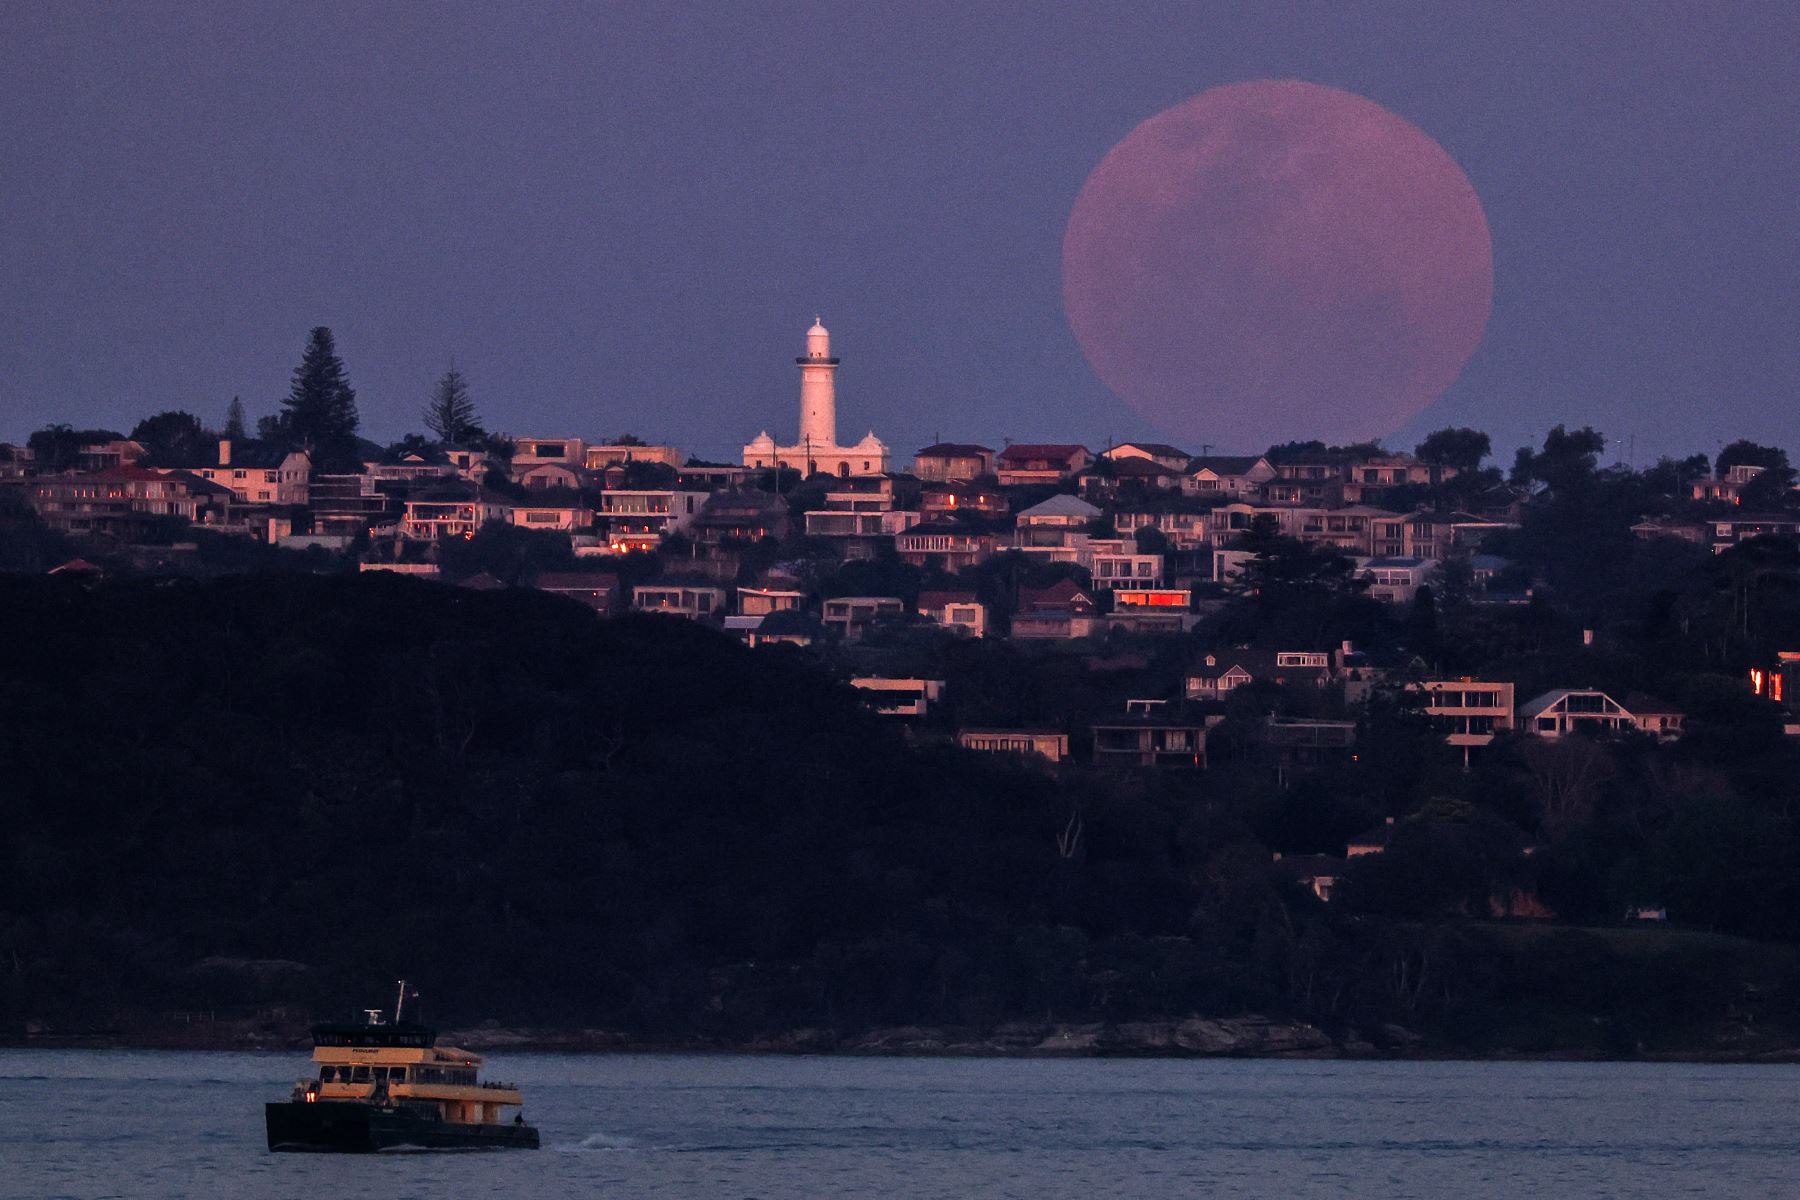 Un ferry viaja frente a una luna llena, una superluna también conocida como "Luna de cosecha", que se eleva sobre el faro Macquarie en Sydney el 29 de septiembre de 2023.
Foto: AFP